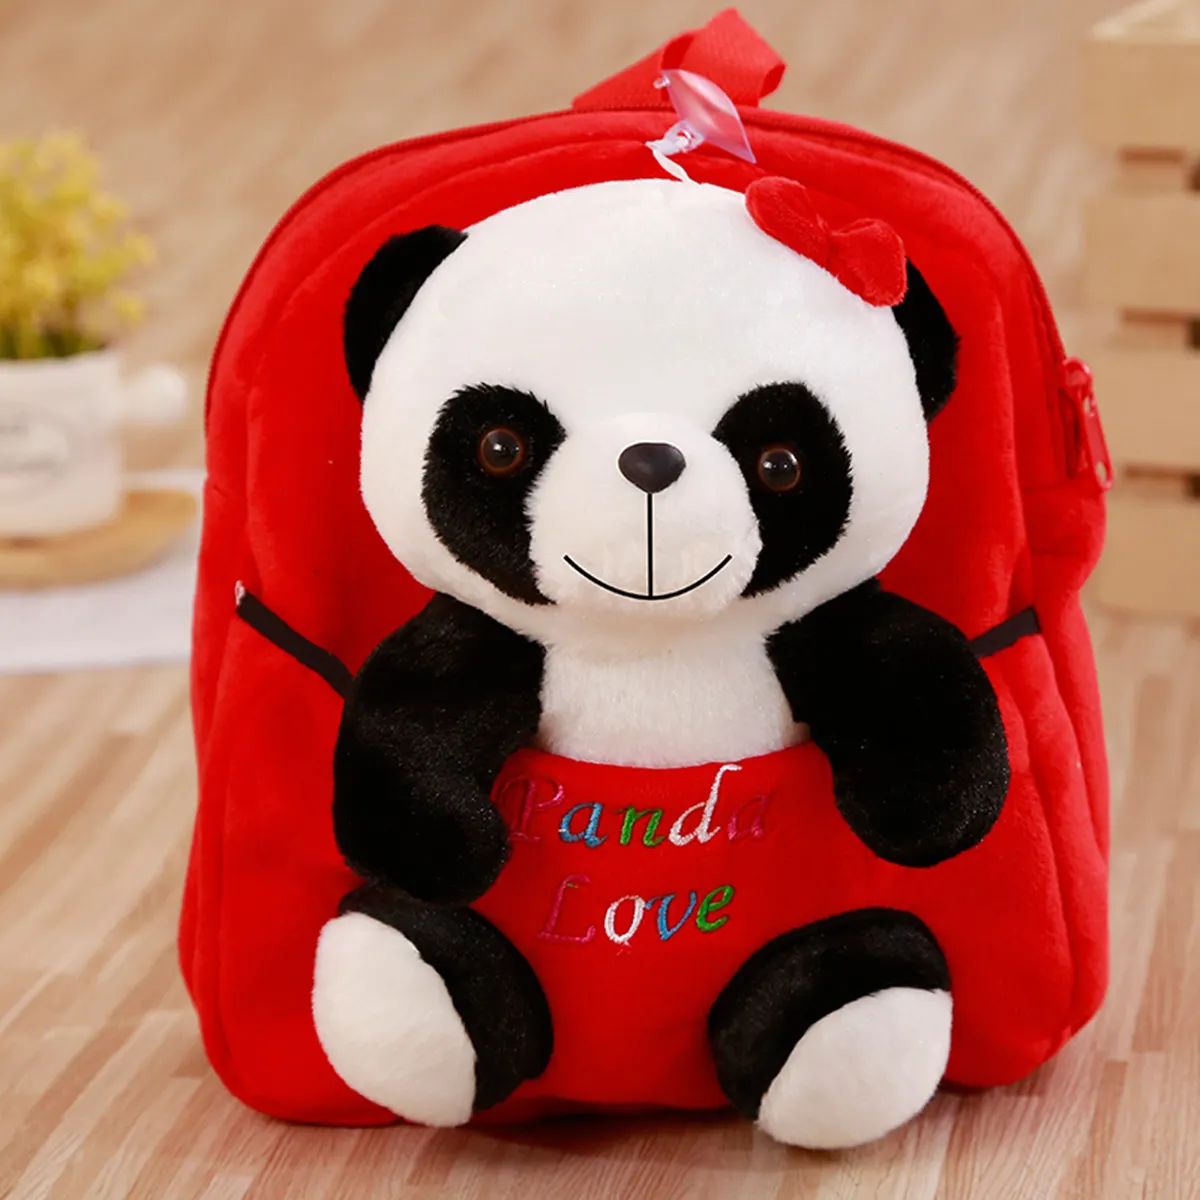 1 шт. Детский Рюкзак Kawaii Panda, сумки, маленькие плюшевые игрушки для детей, студентов, для девочки, мальчика, ребёнка, мягкая плюшевая кукла, подарок на день рождения - Цвет: red